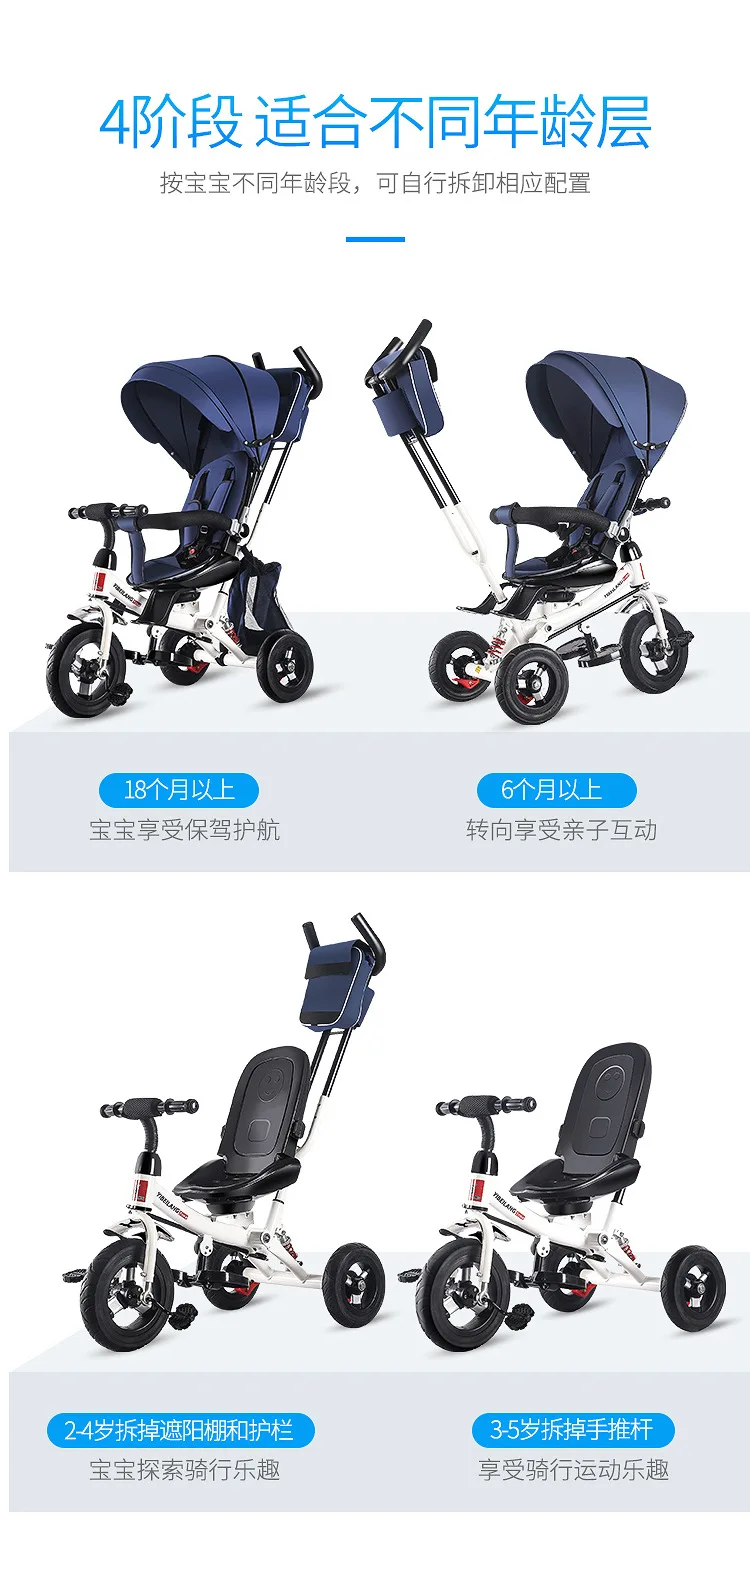 Детская трехколесная коляска с тентом, амортизационная подушка для сиденья, вращающаяся на 180 градусов, на спинку стула, на колесиках для малышей, детей, велосипедов